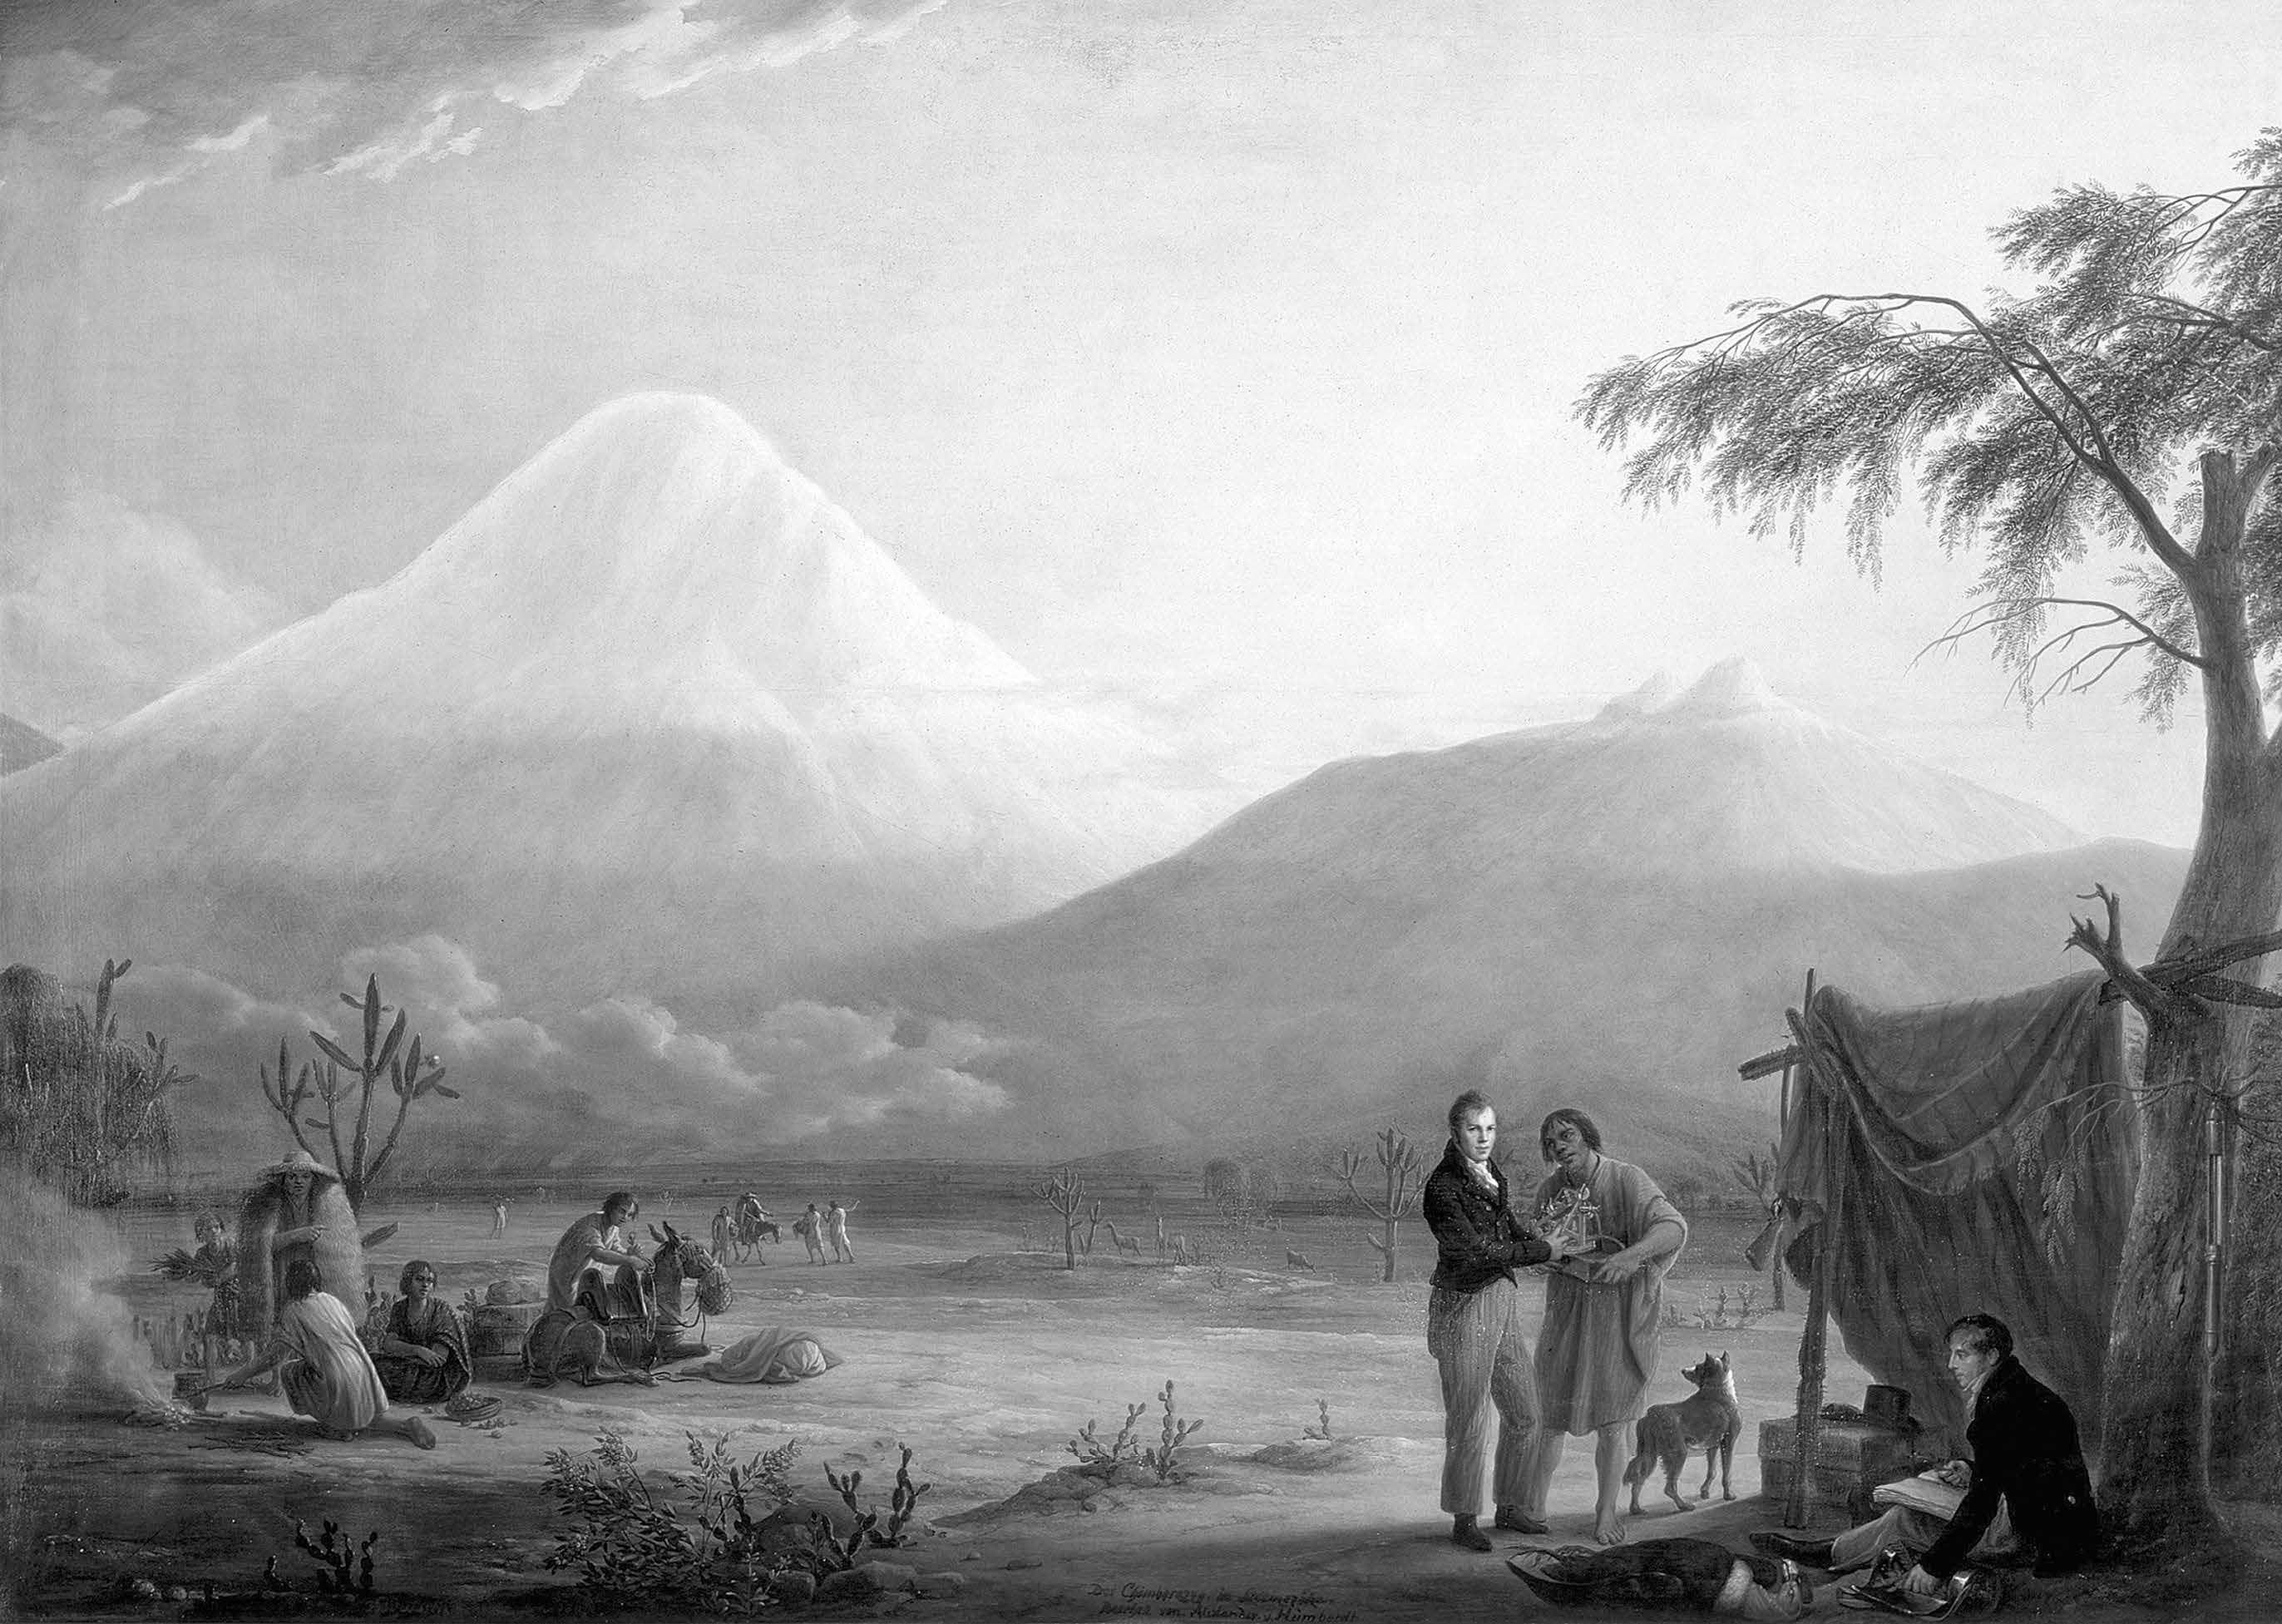 Alexander von Humboldt and Aimé Bonpland at the Foot of the Chimborazo Volcano, by Friedrich Georg Weitsch (1806).